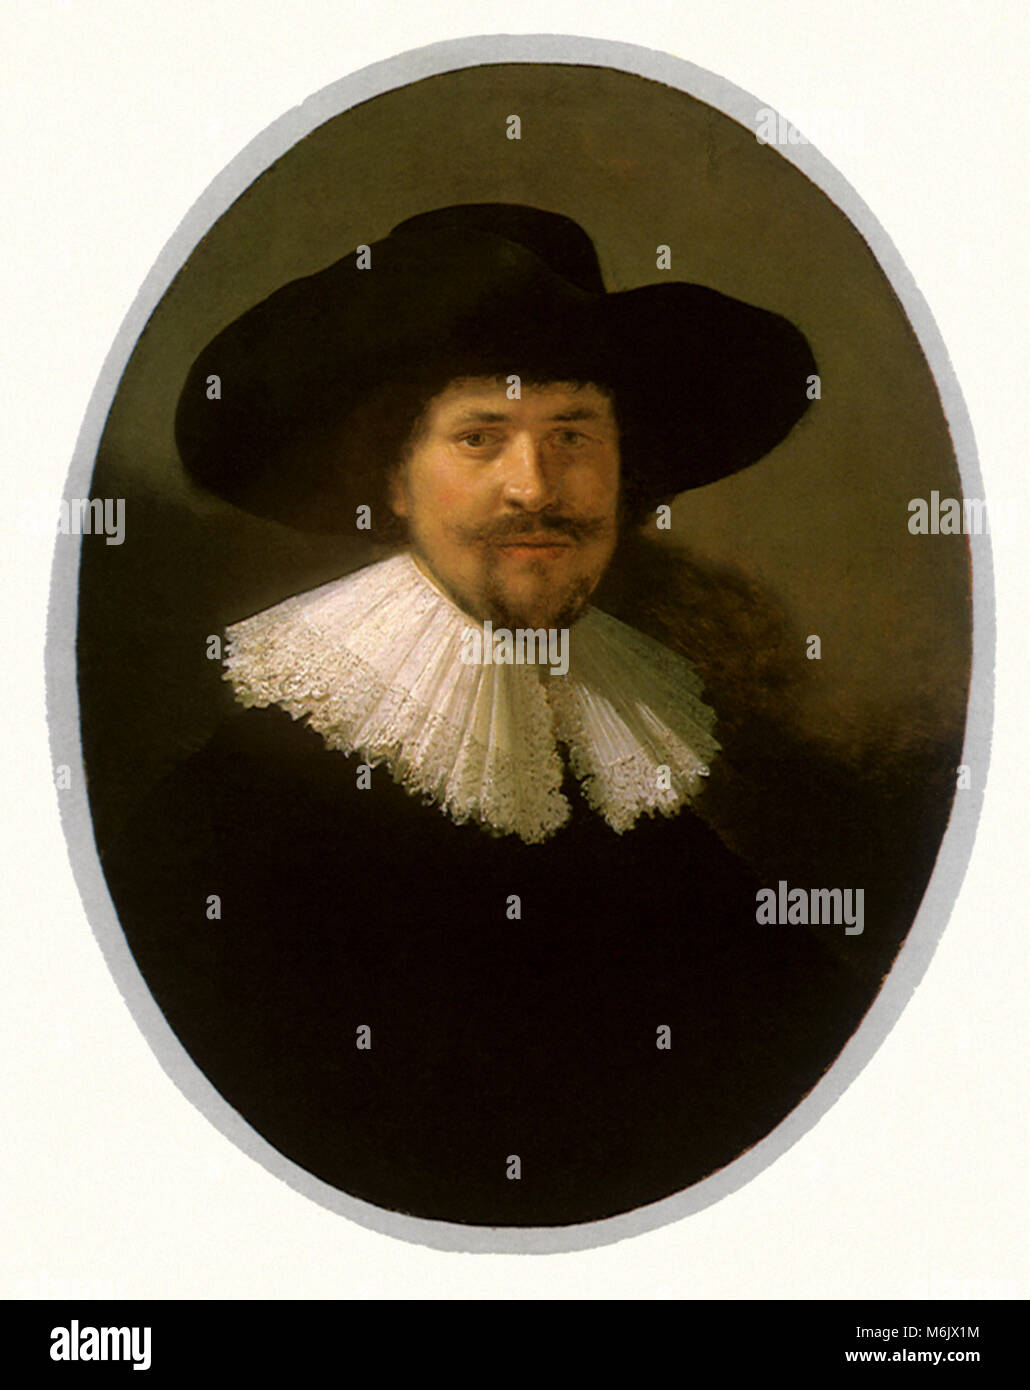 Porträt eines Mannes mit einem Spitzbart&a Wide-Brimmed Hut, Rembrandts Werkstatt, 1634. Stockfoto